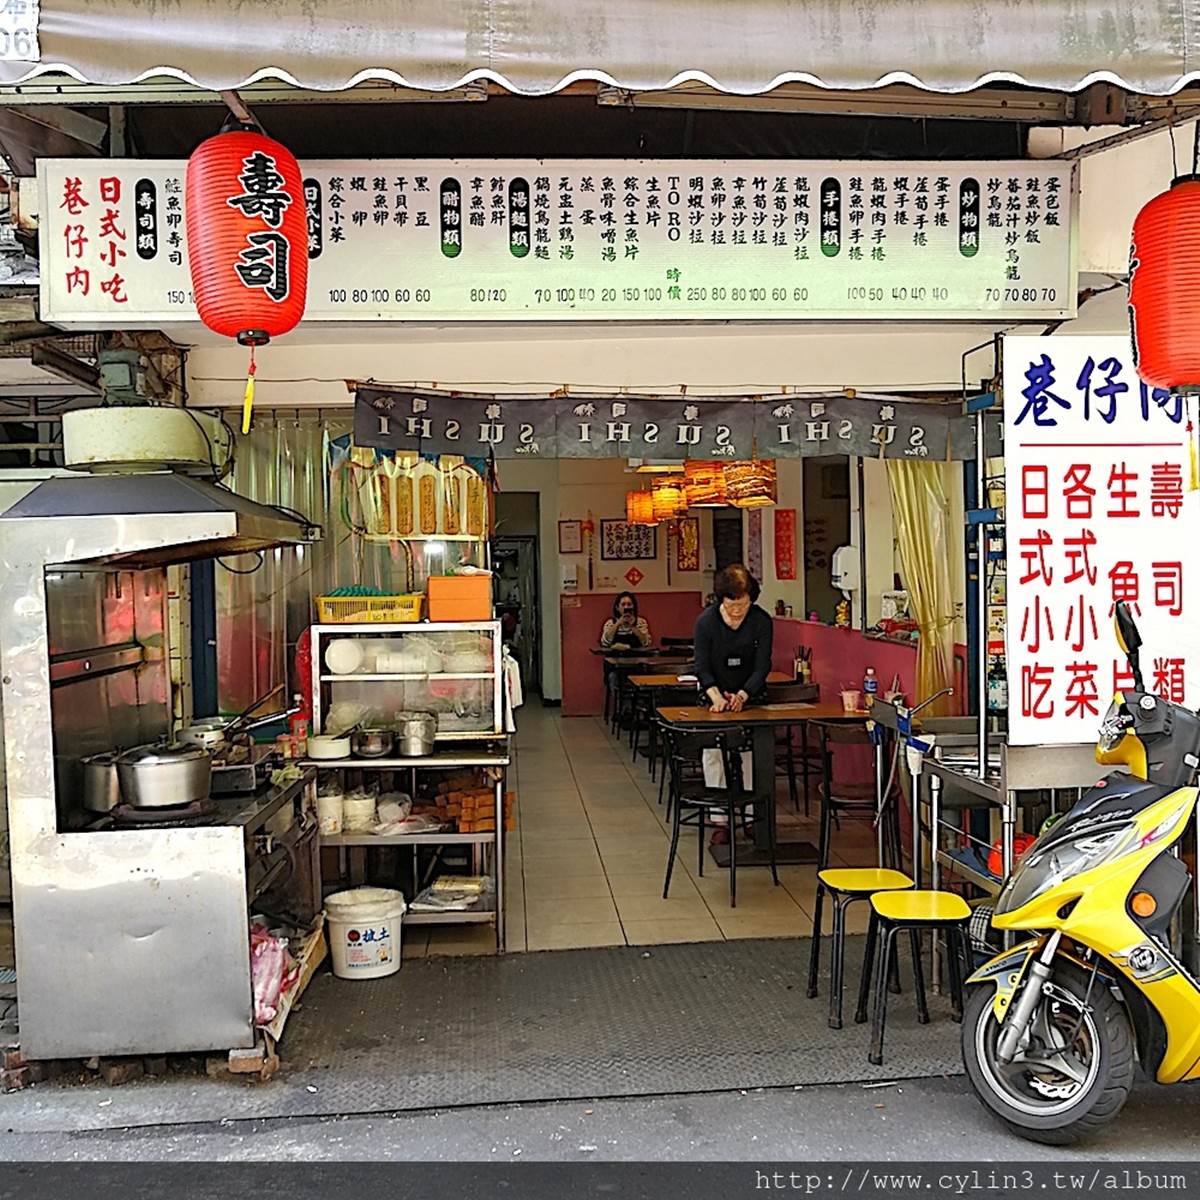 外食族必收！台北５家隱藏版便當：90元滿料雞丁、比手掌大炸豬排、週間限定川菜餐盒